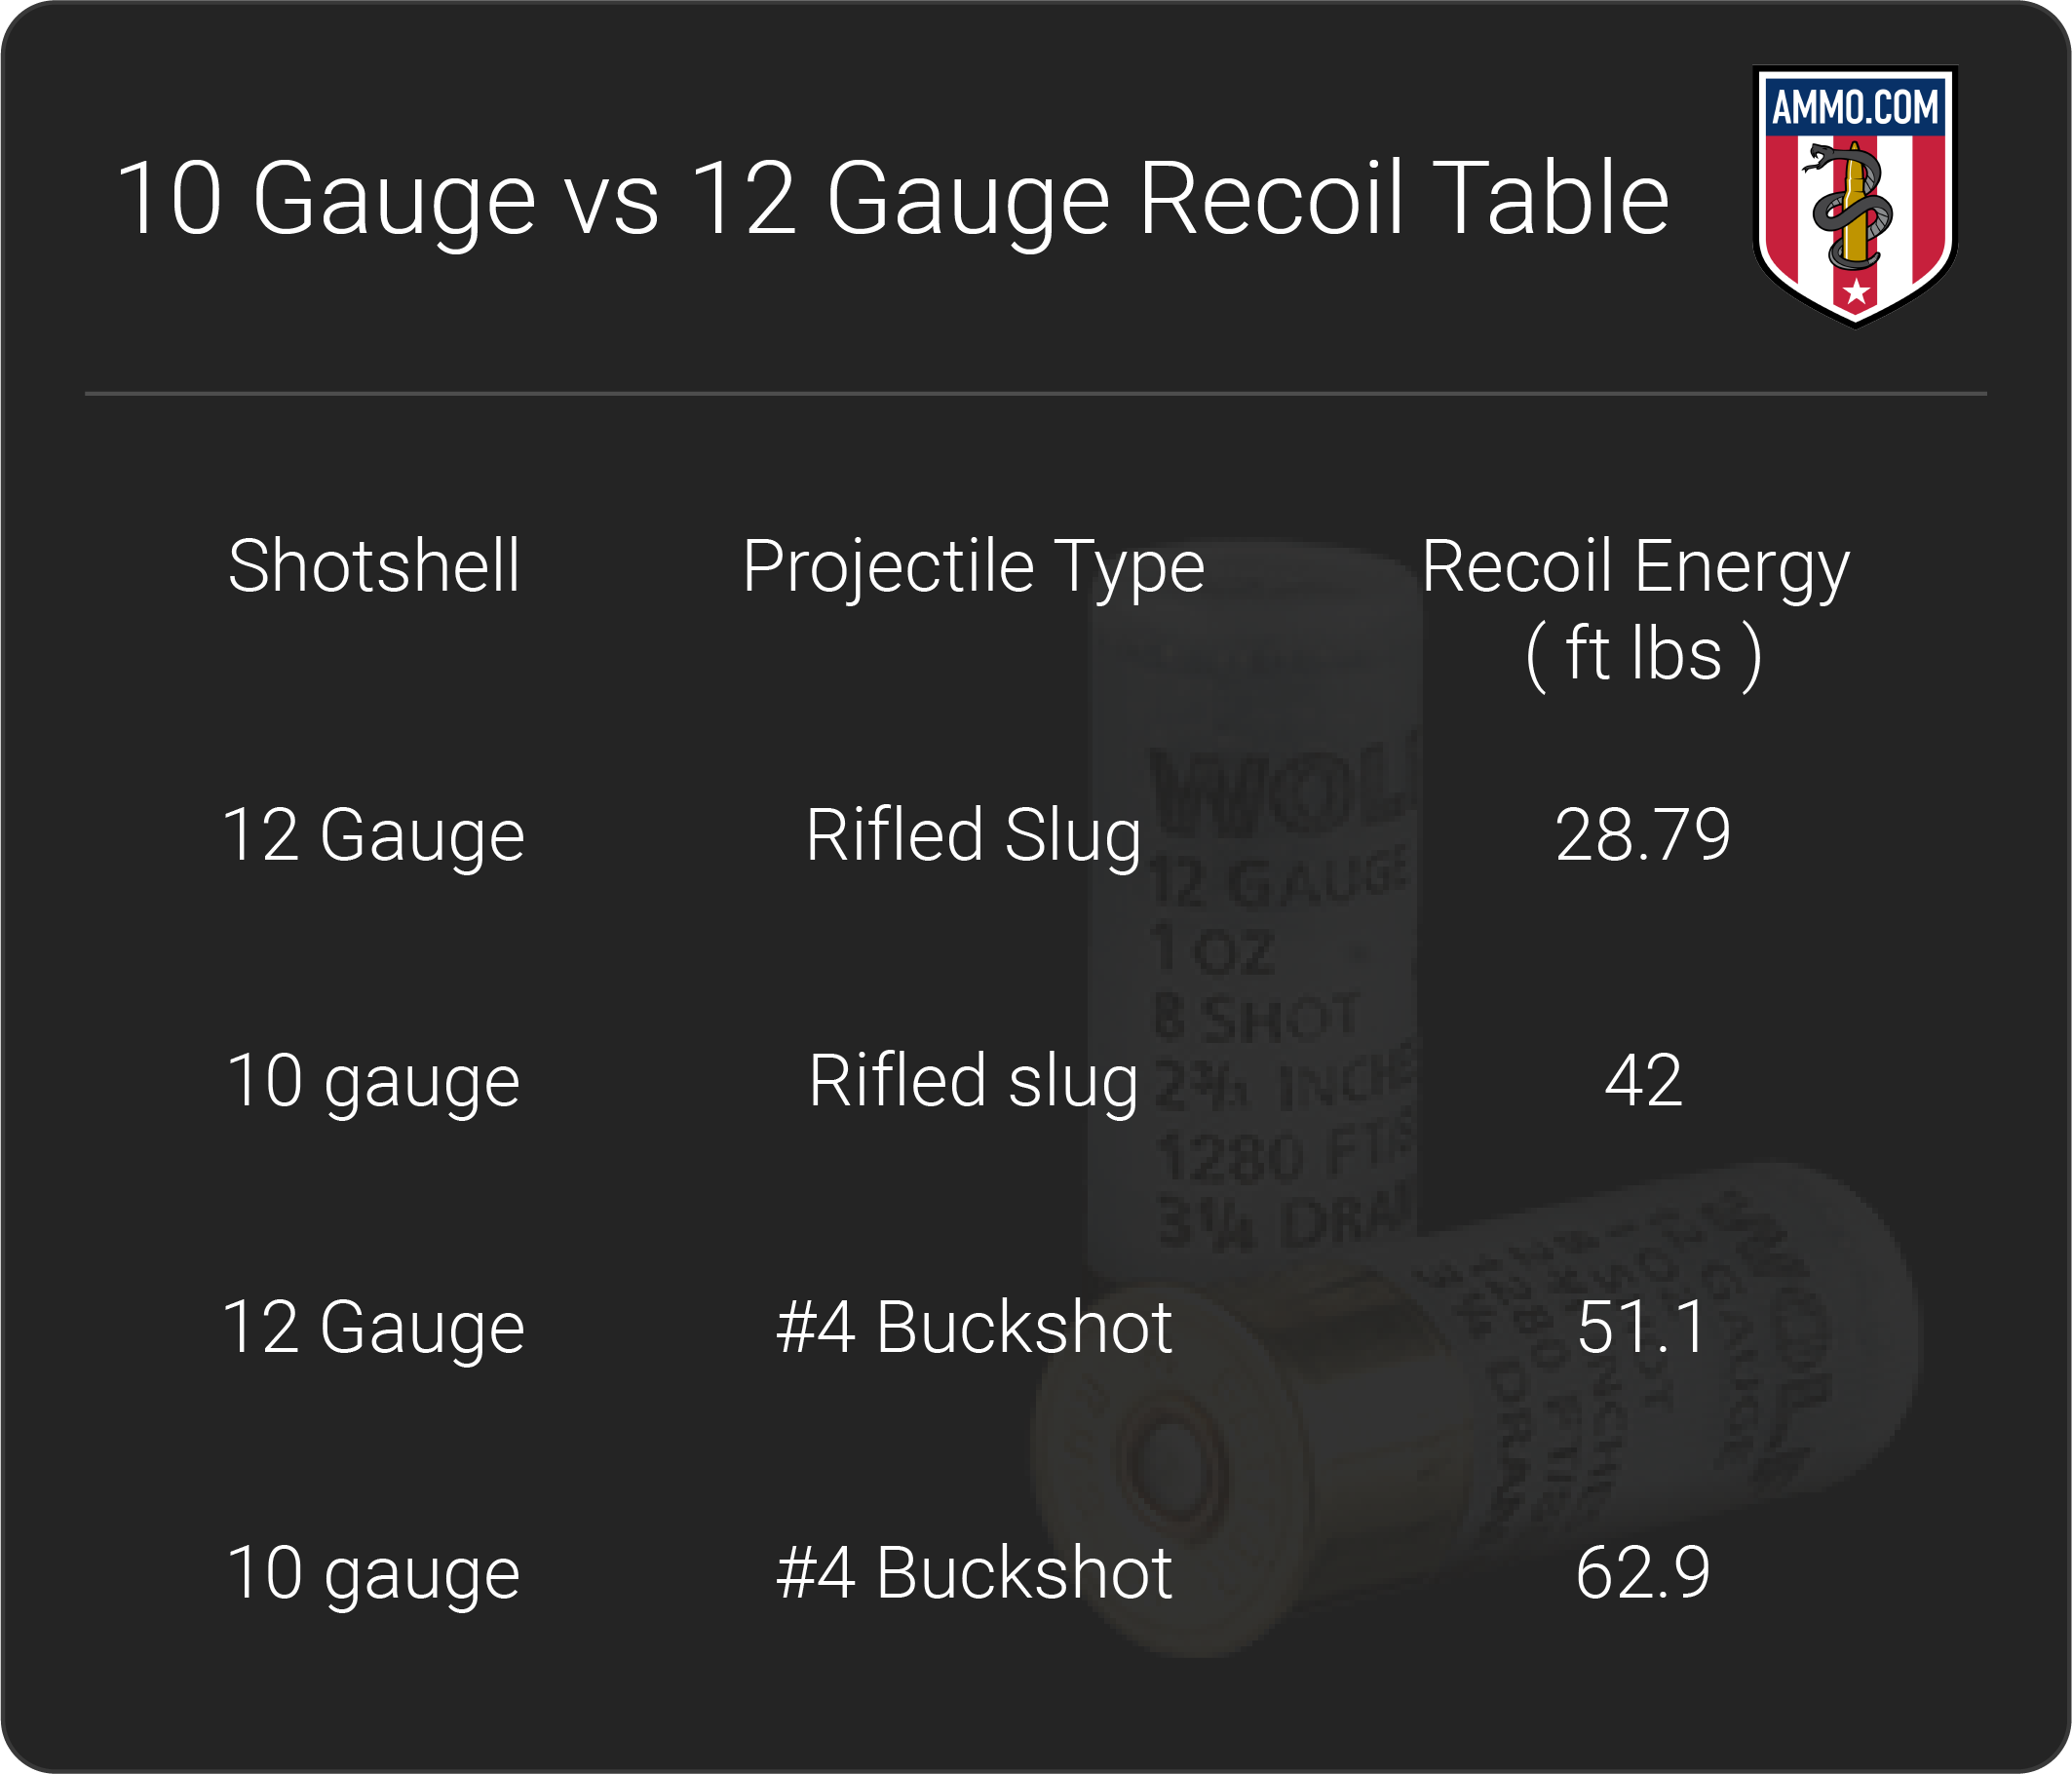 10 Gauge vs 12 Gauge recoil table